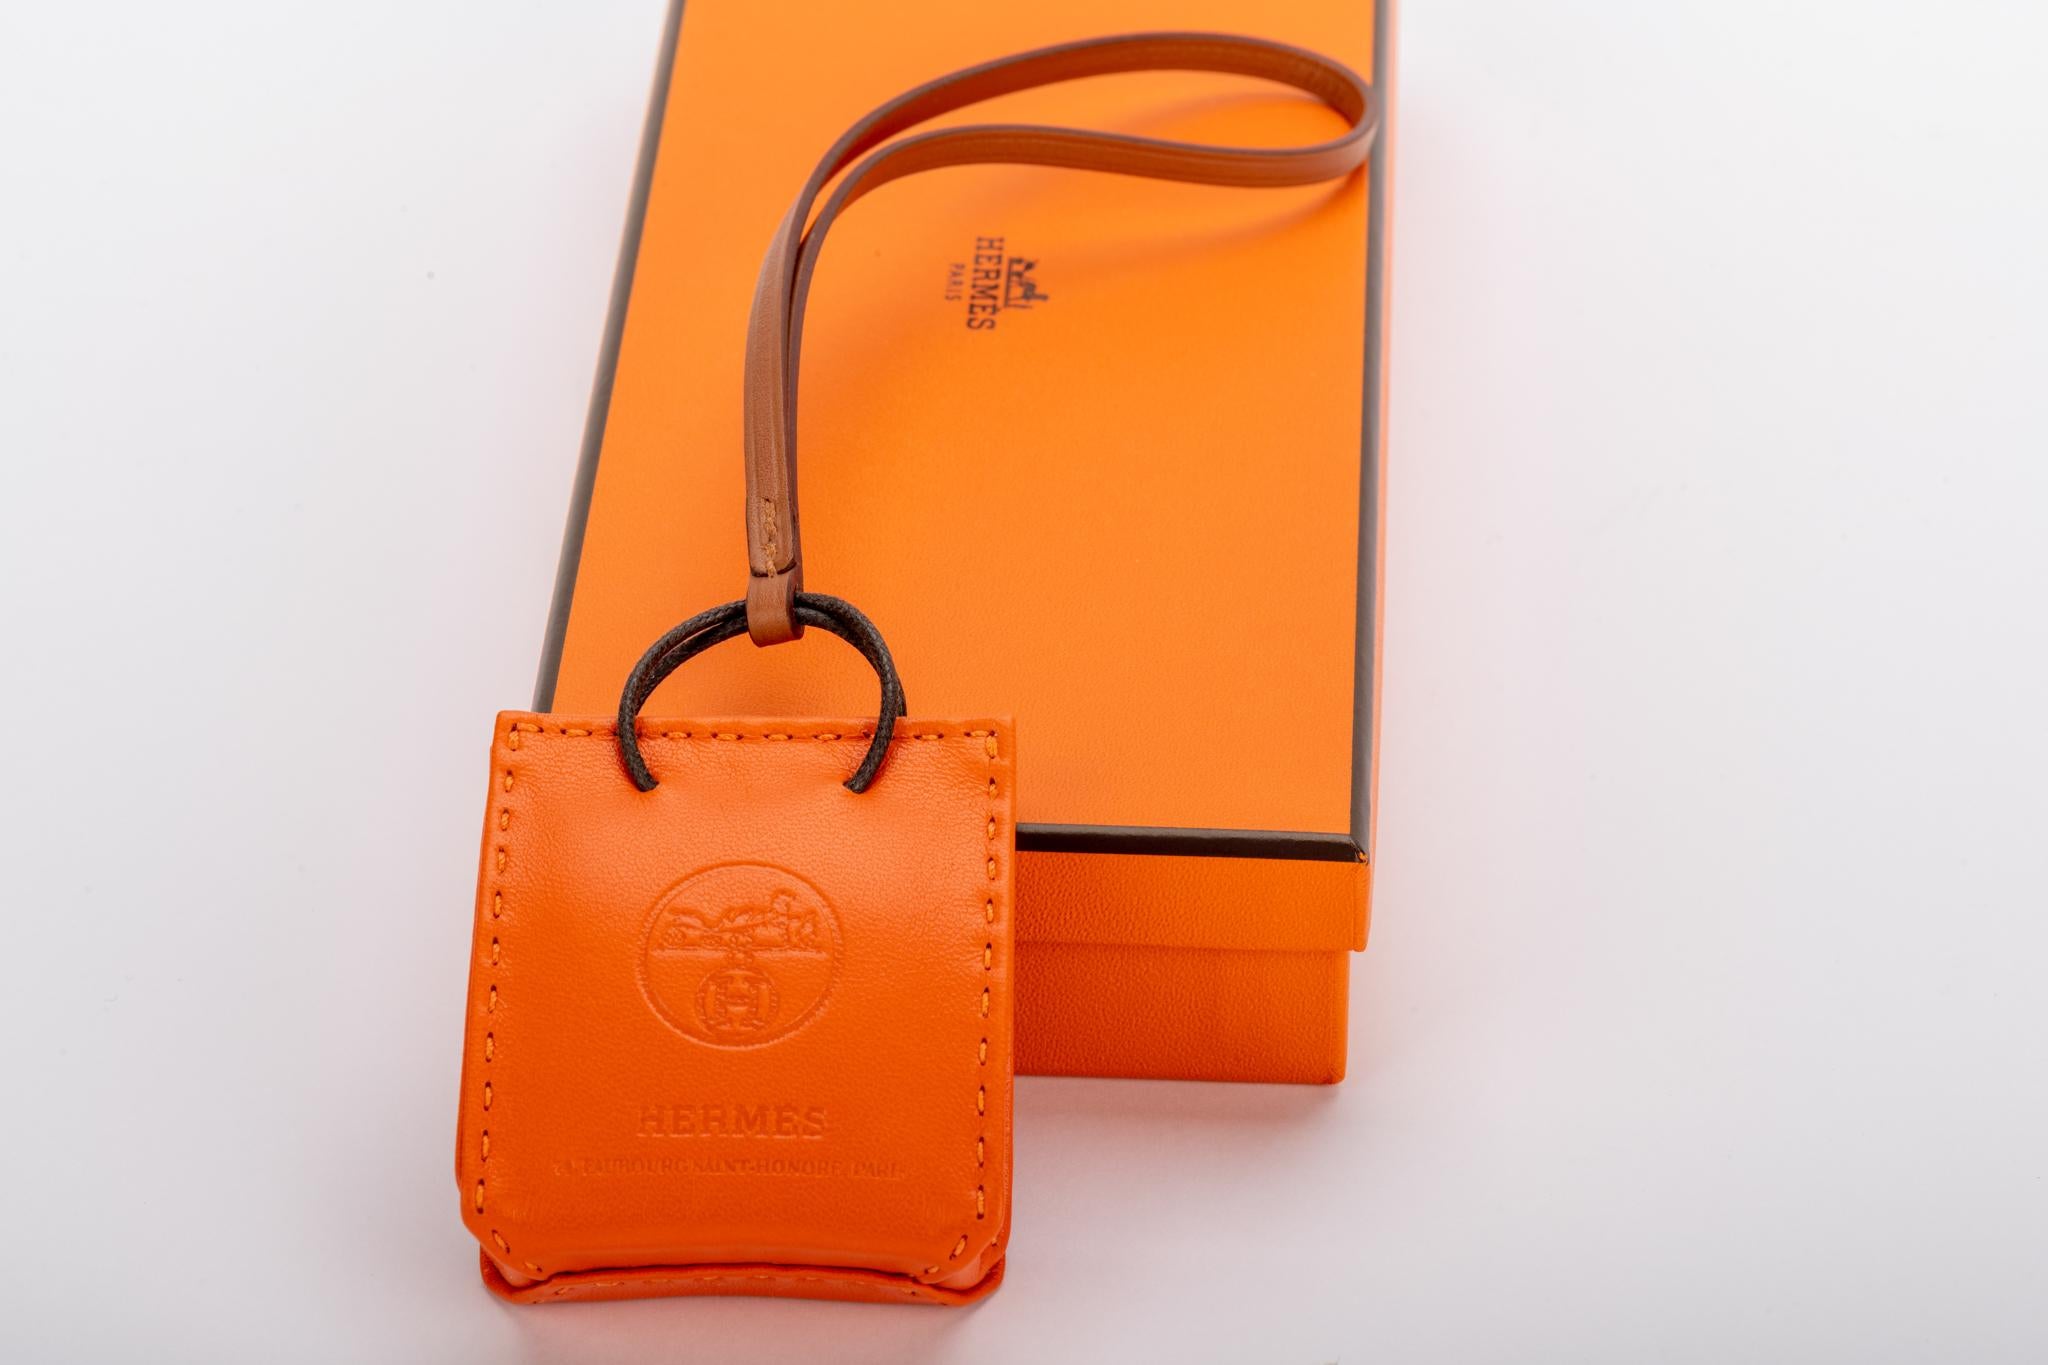 Hermès collection 2020 charme de sac orange en cuir swift. Neuf avec boîte d'origine.